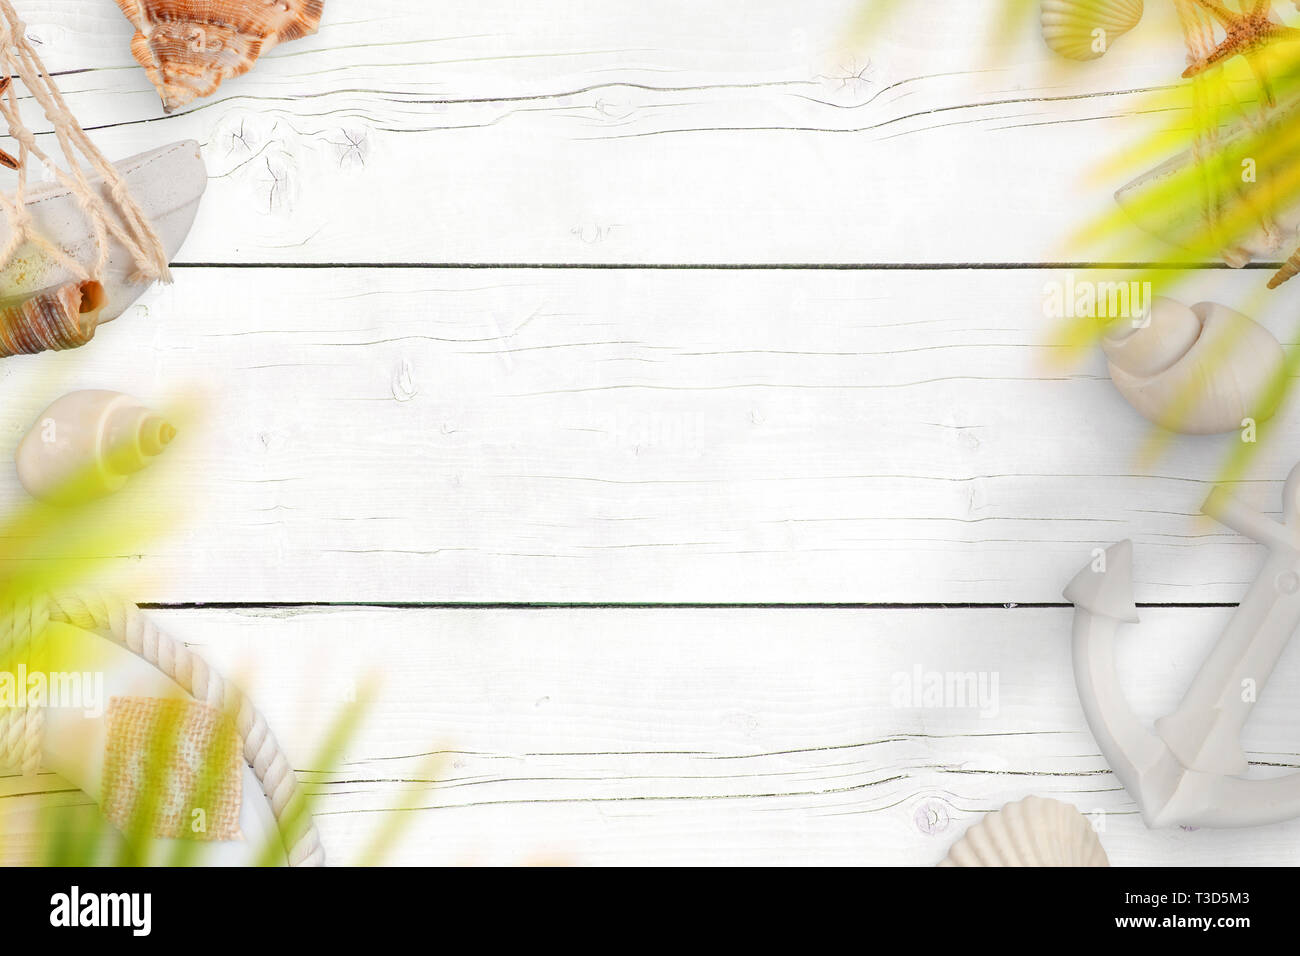 Arrière-plan de voyage d'été. Bureau en bois blanc avec des coquillages, l'ancre de bateau et de la vie de la courroie. Les feuilles de palmier au-dessus. Copie de l'espace dans le milieu. Banque D'Images